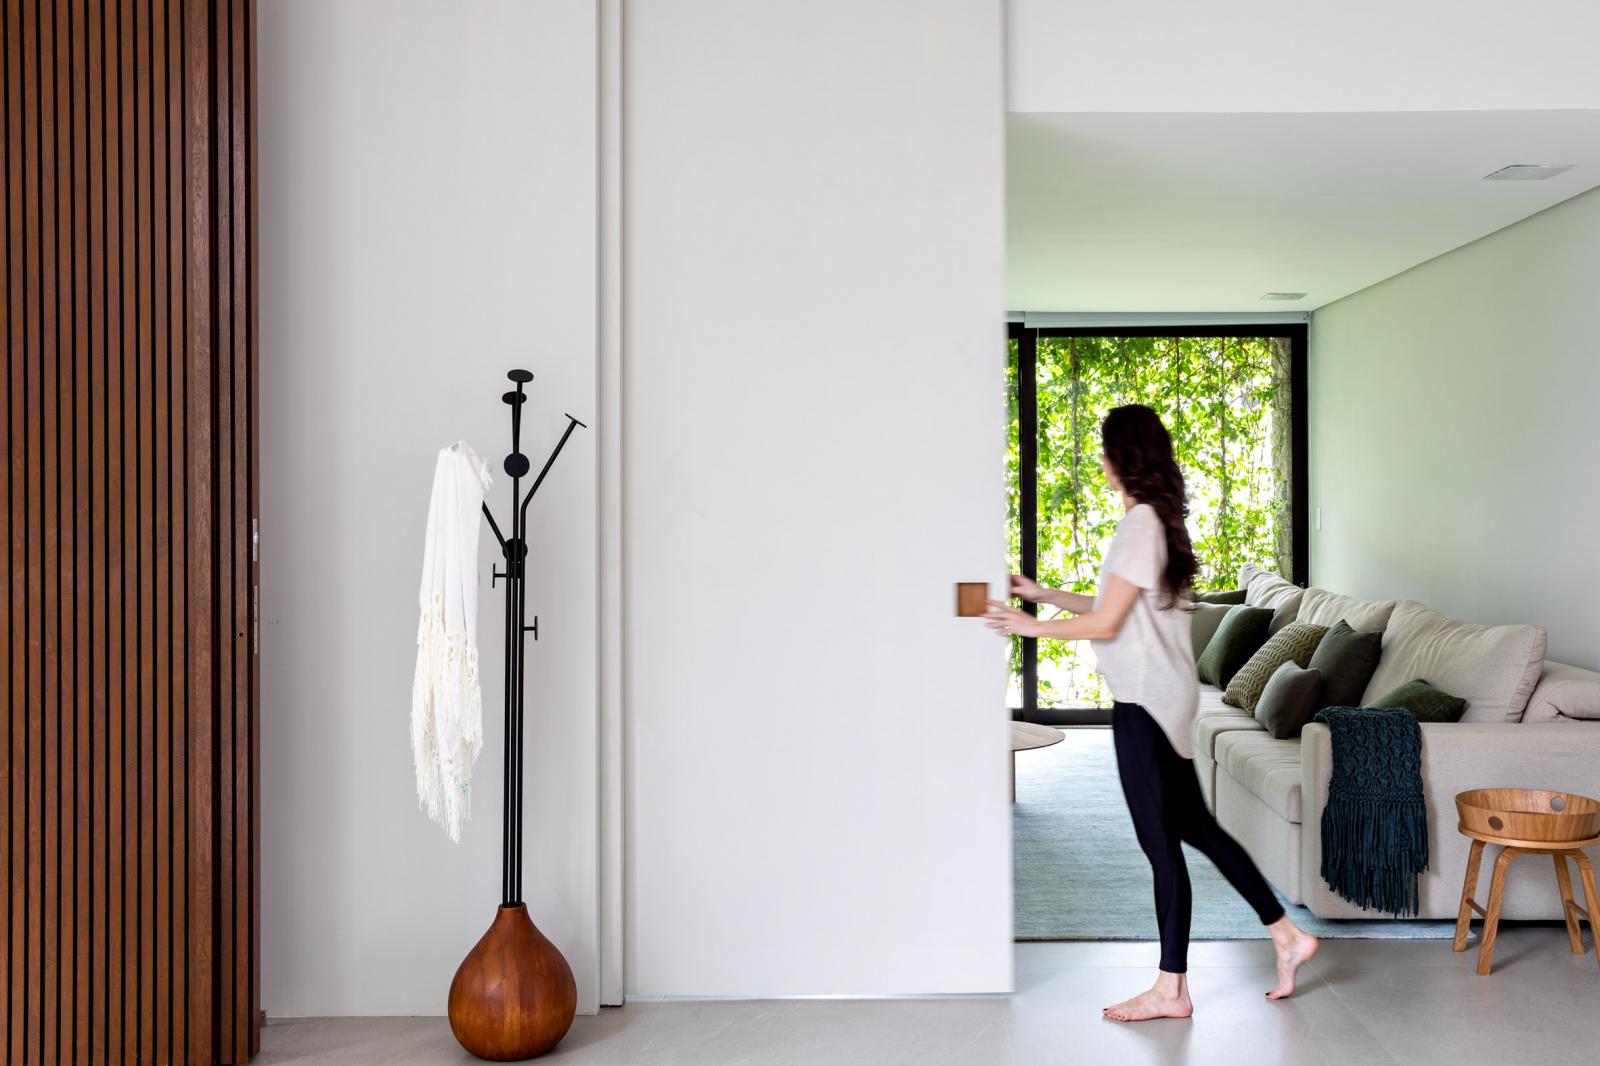 hình ảnh cô gái trẻ đứng ở hành lang ngôi nhà tối giản, cạnh đó là phòng khách, tường ốp gỗ, phụ kiện trang trí